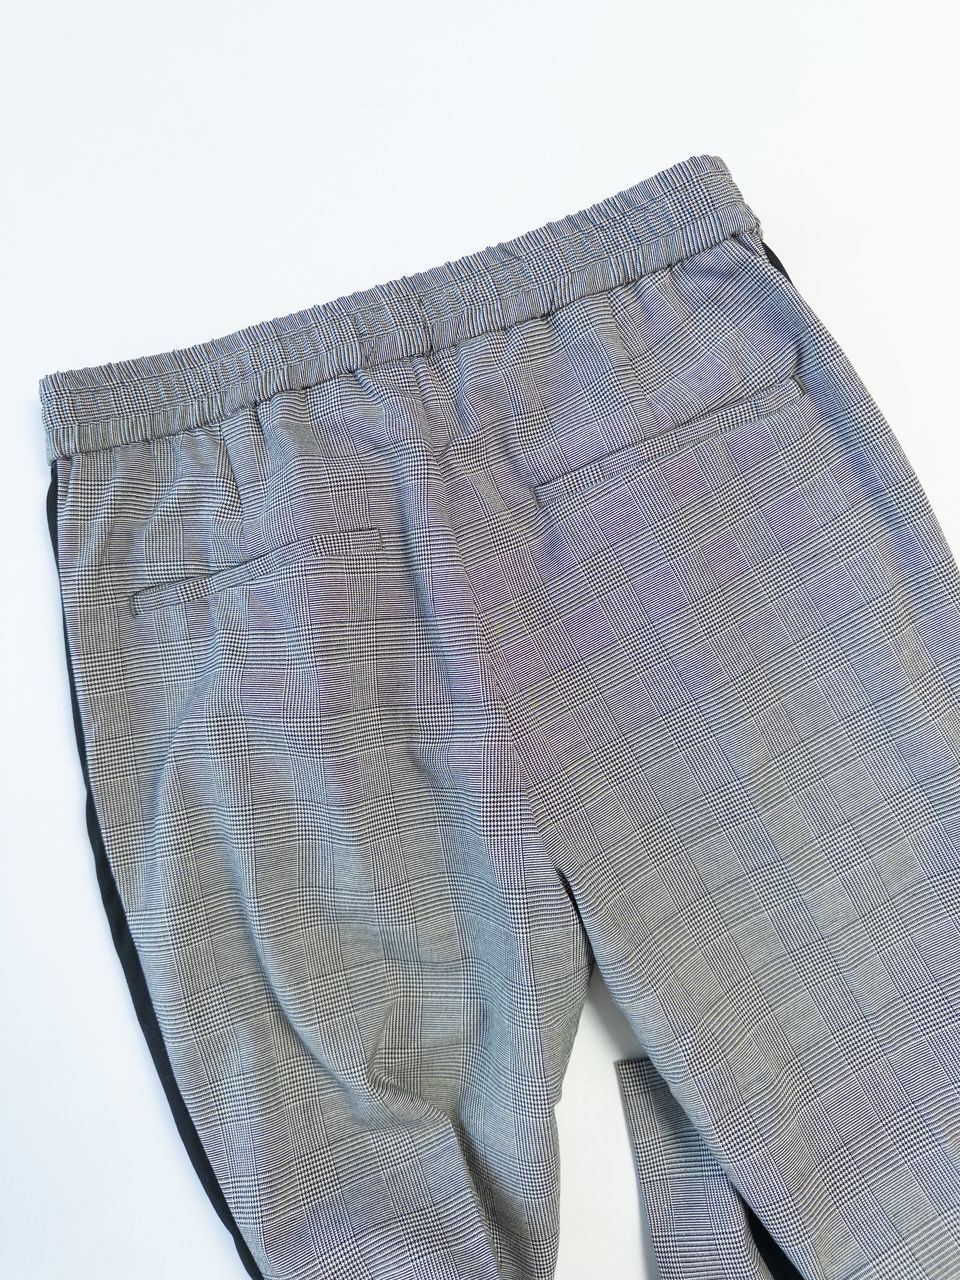 Костюмные брюки в полоску цвет черный/сетка размер EUR 46S 165/80А (rus 46 S) H&M